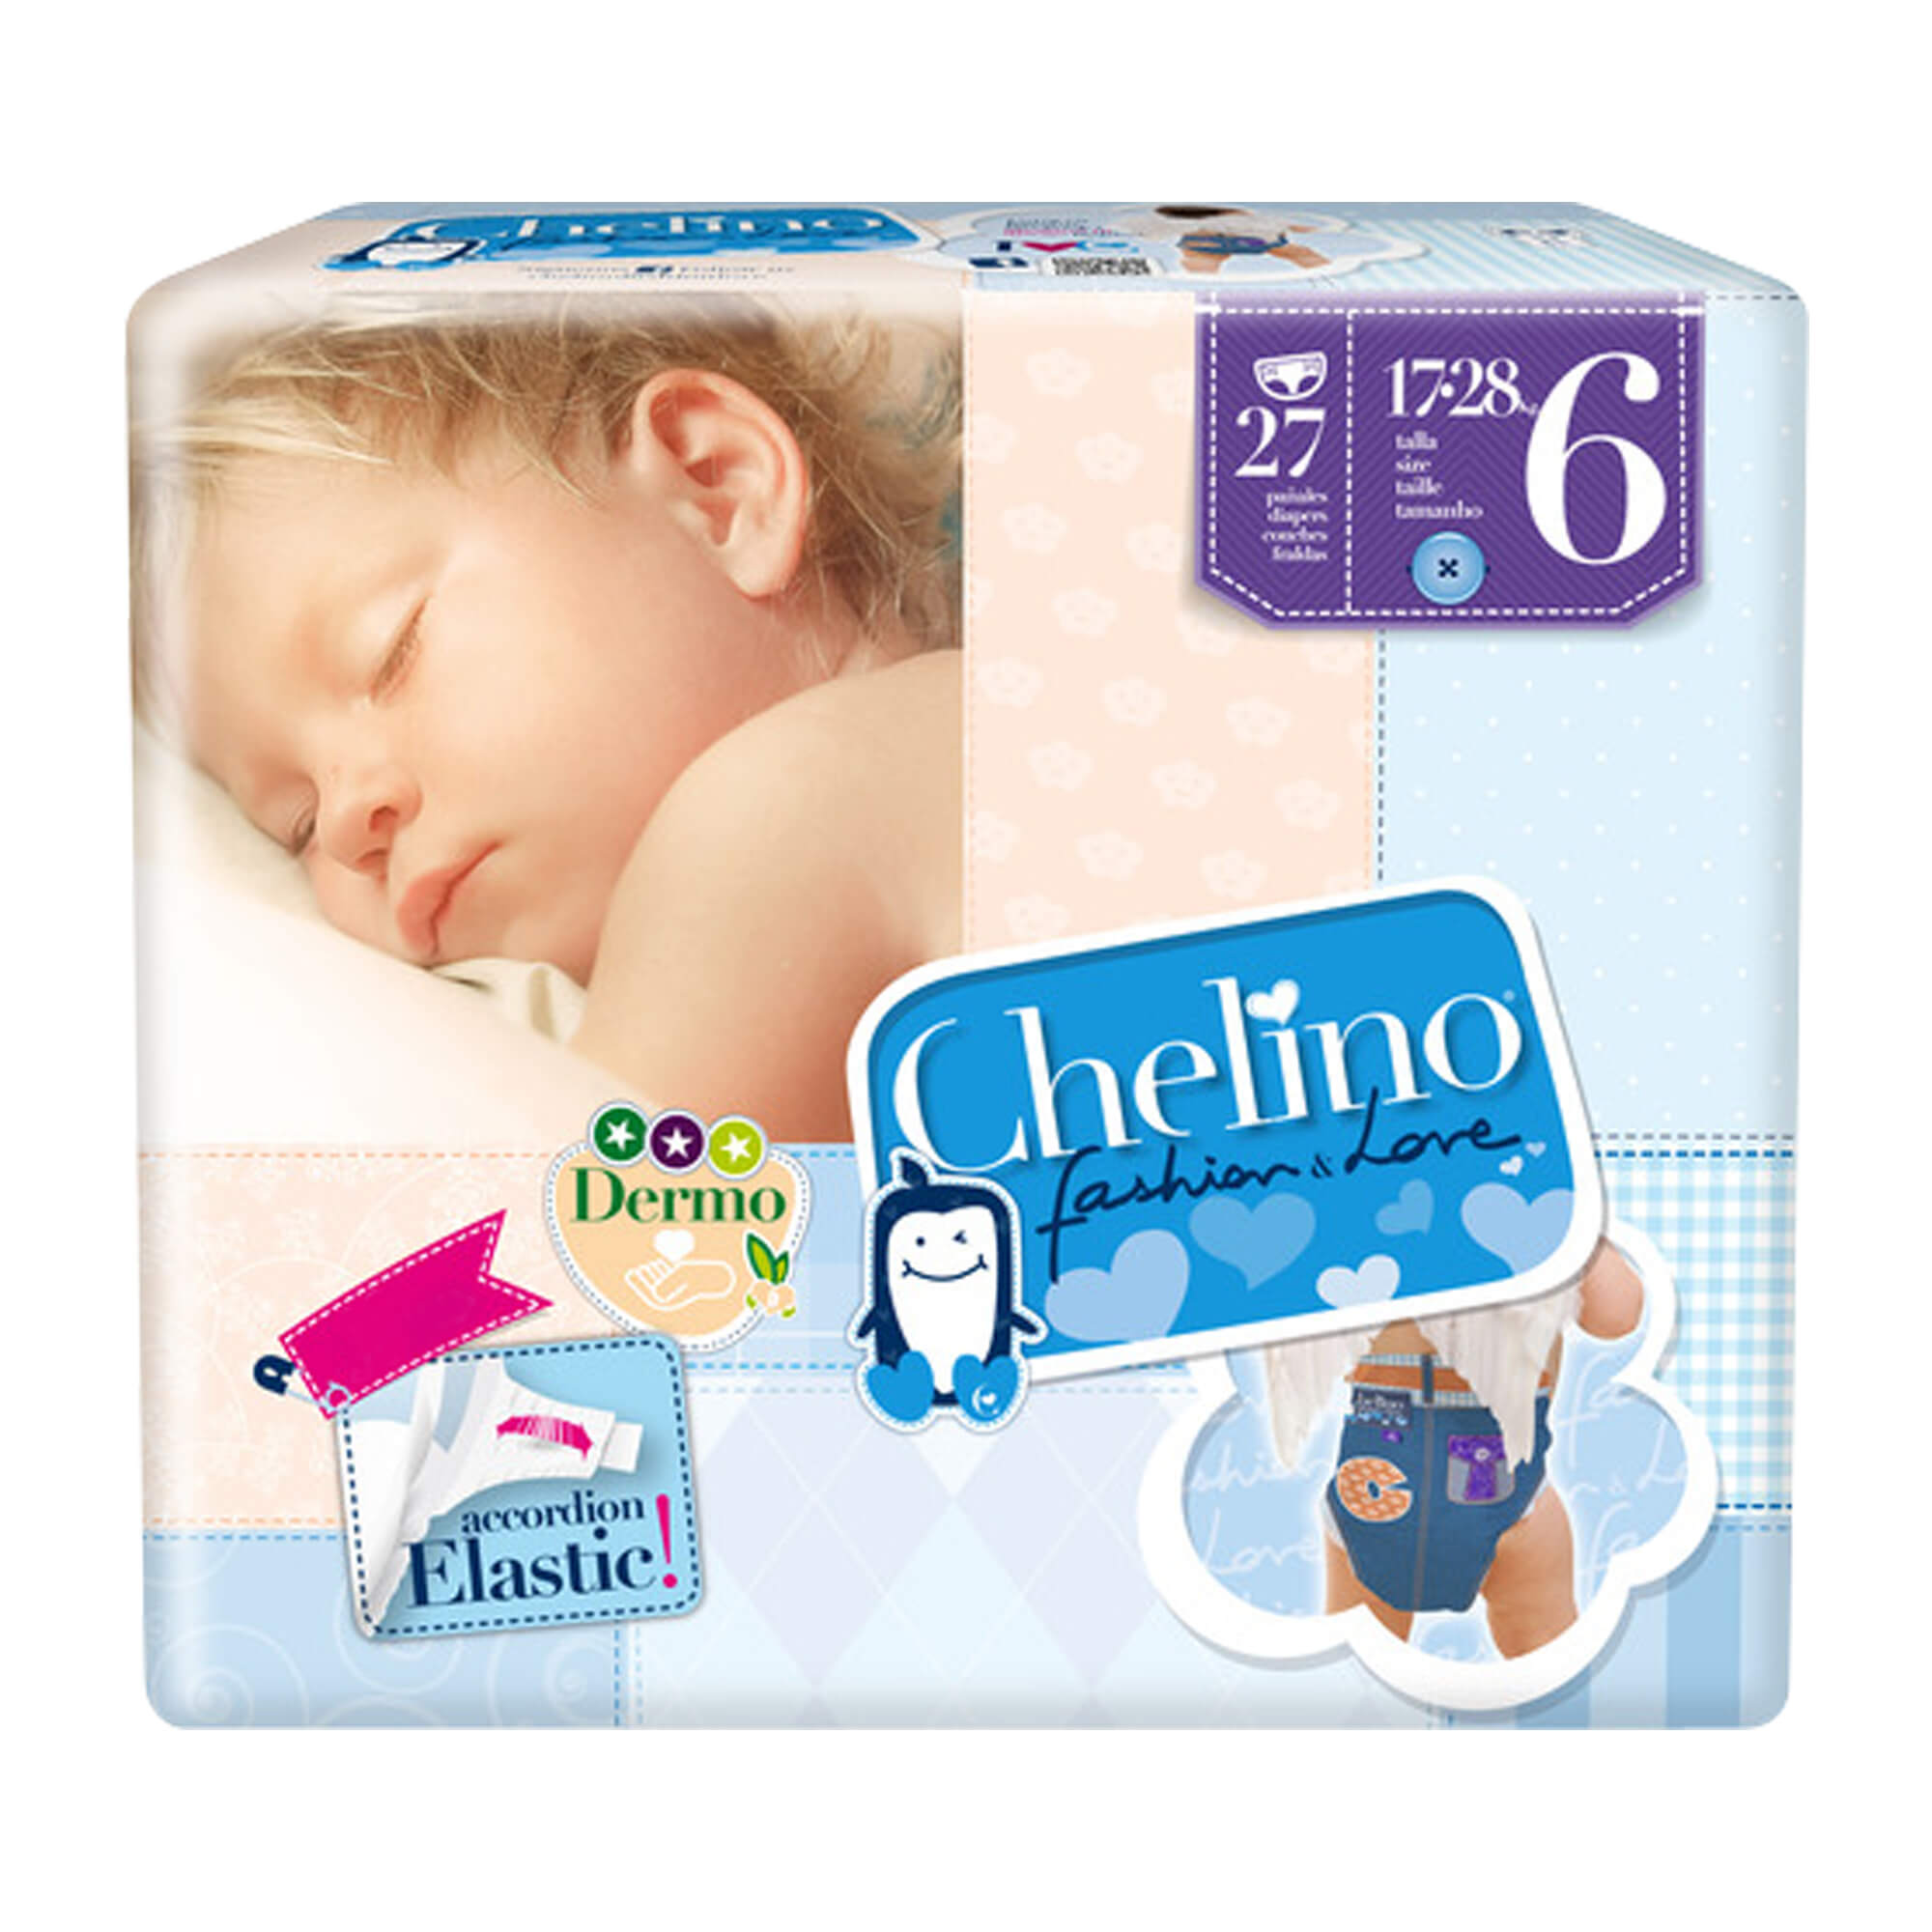 Die Chelino 6 Junior 17-28kg Babywindeln überzeugen durch ihre Qualität und ihr Design.